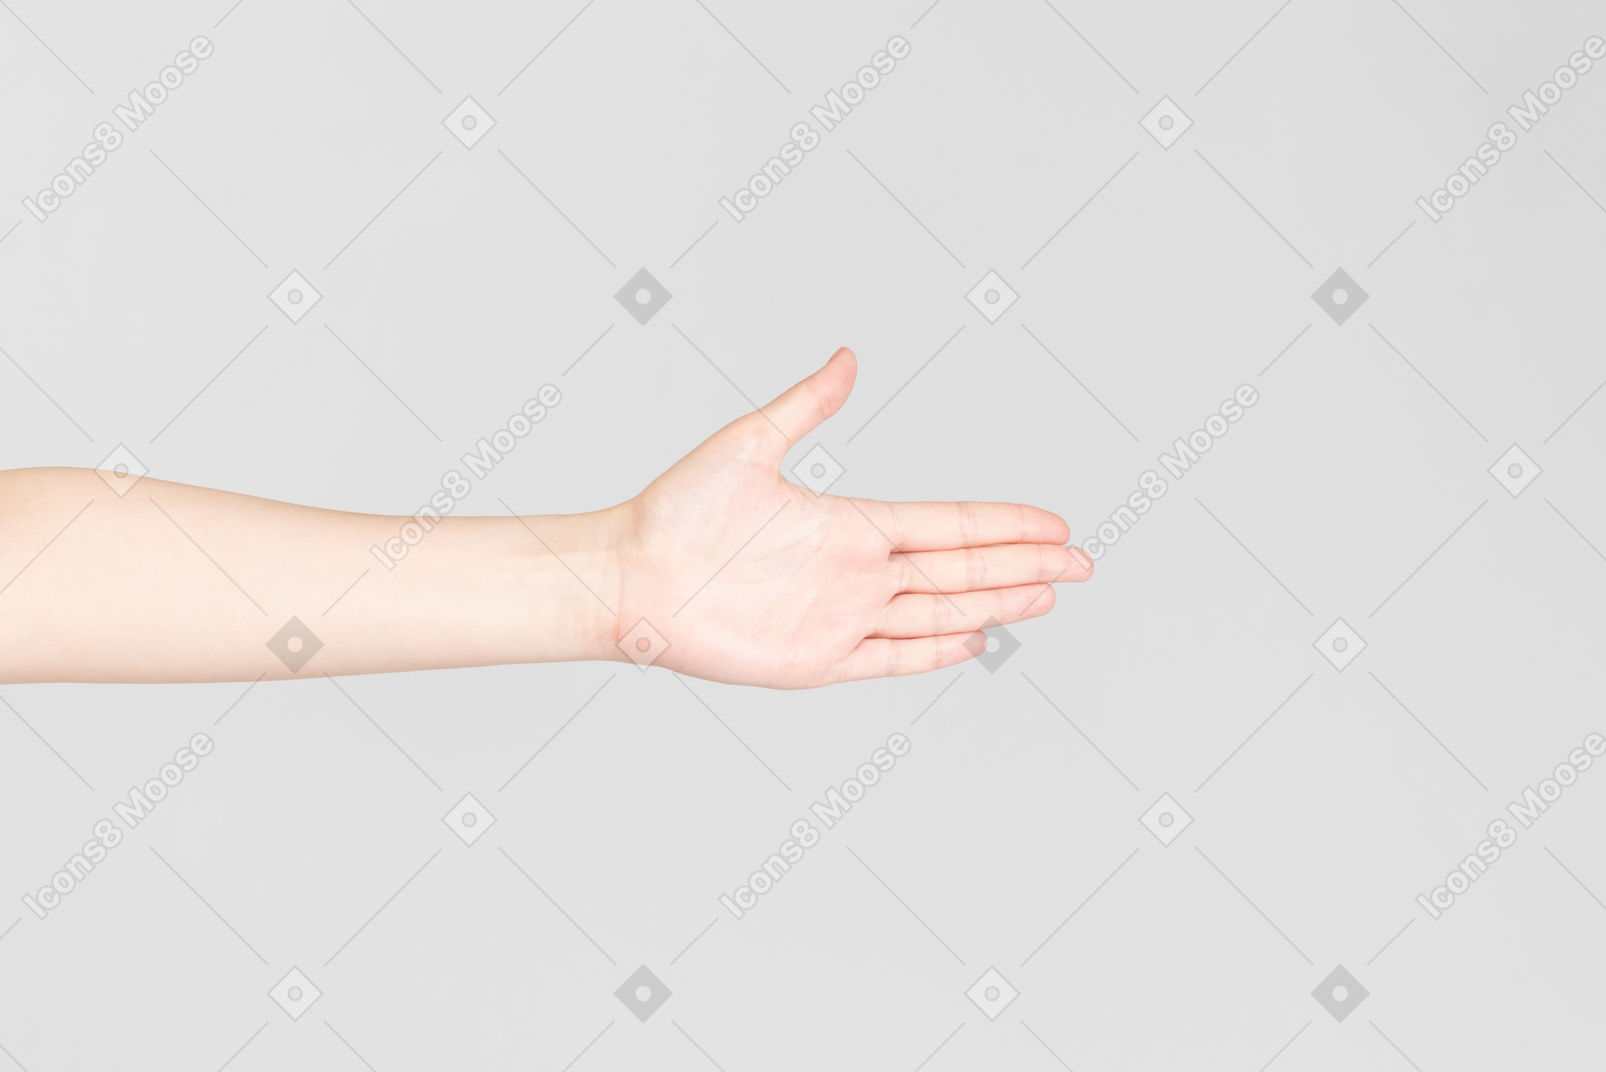 Aspetto laterale del palmo della mano femminile